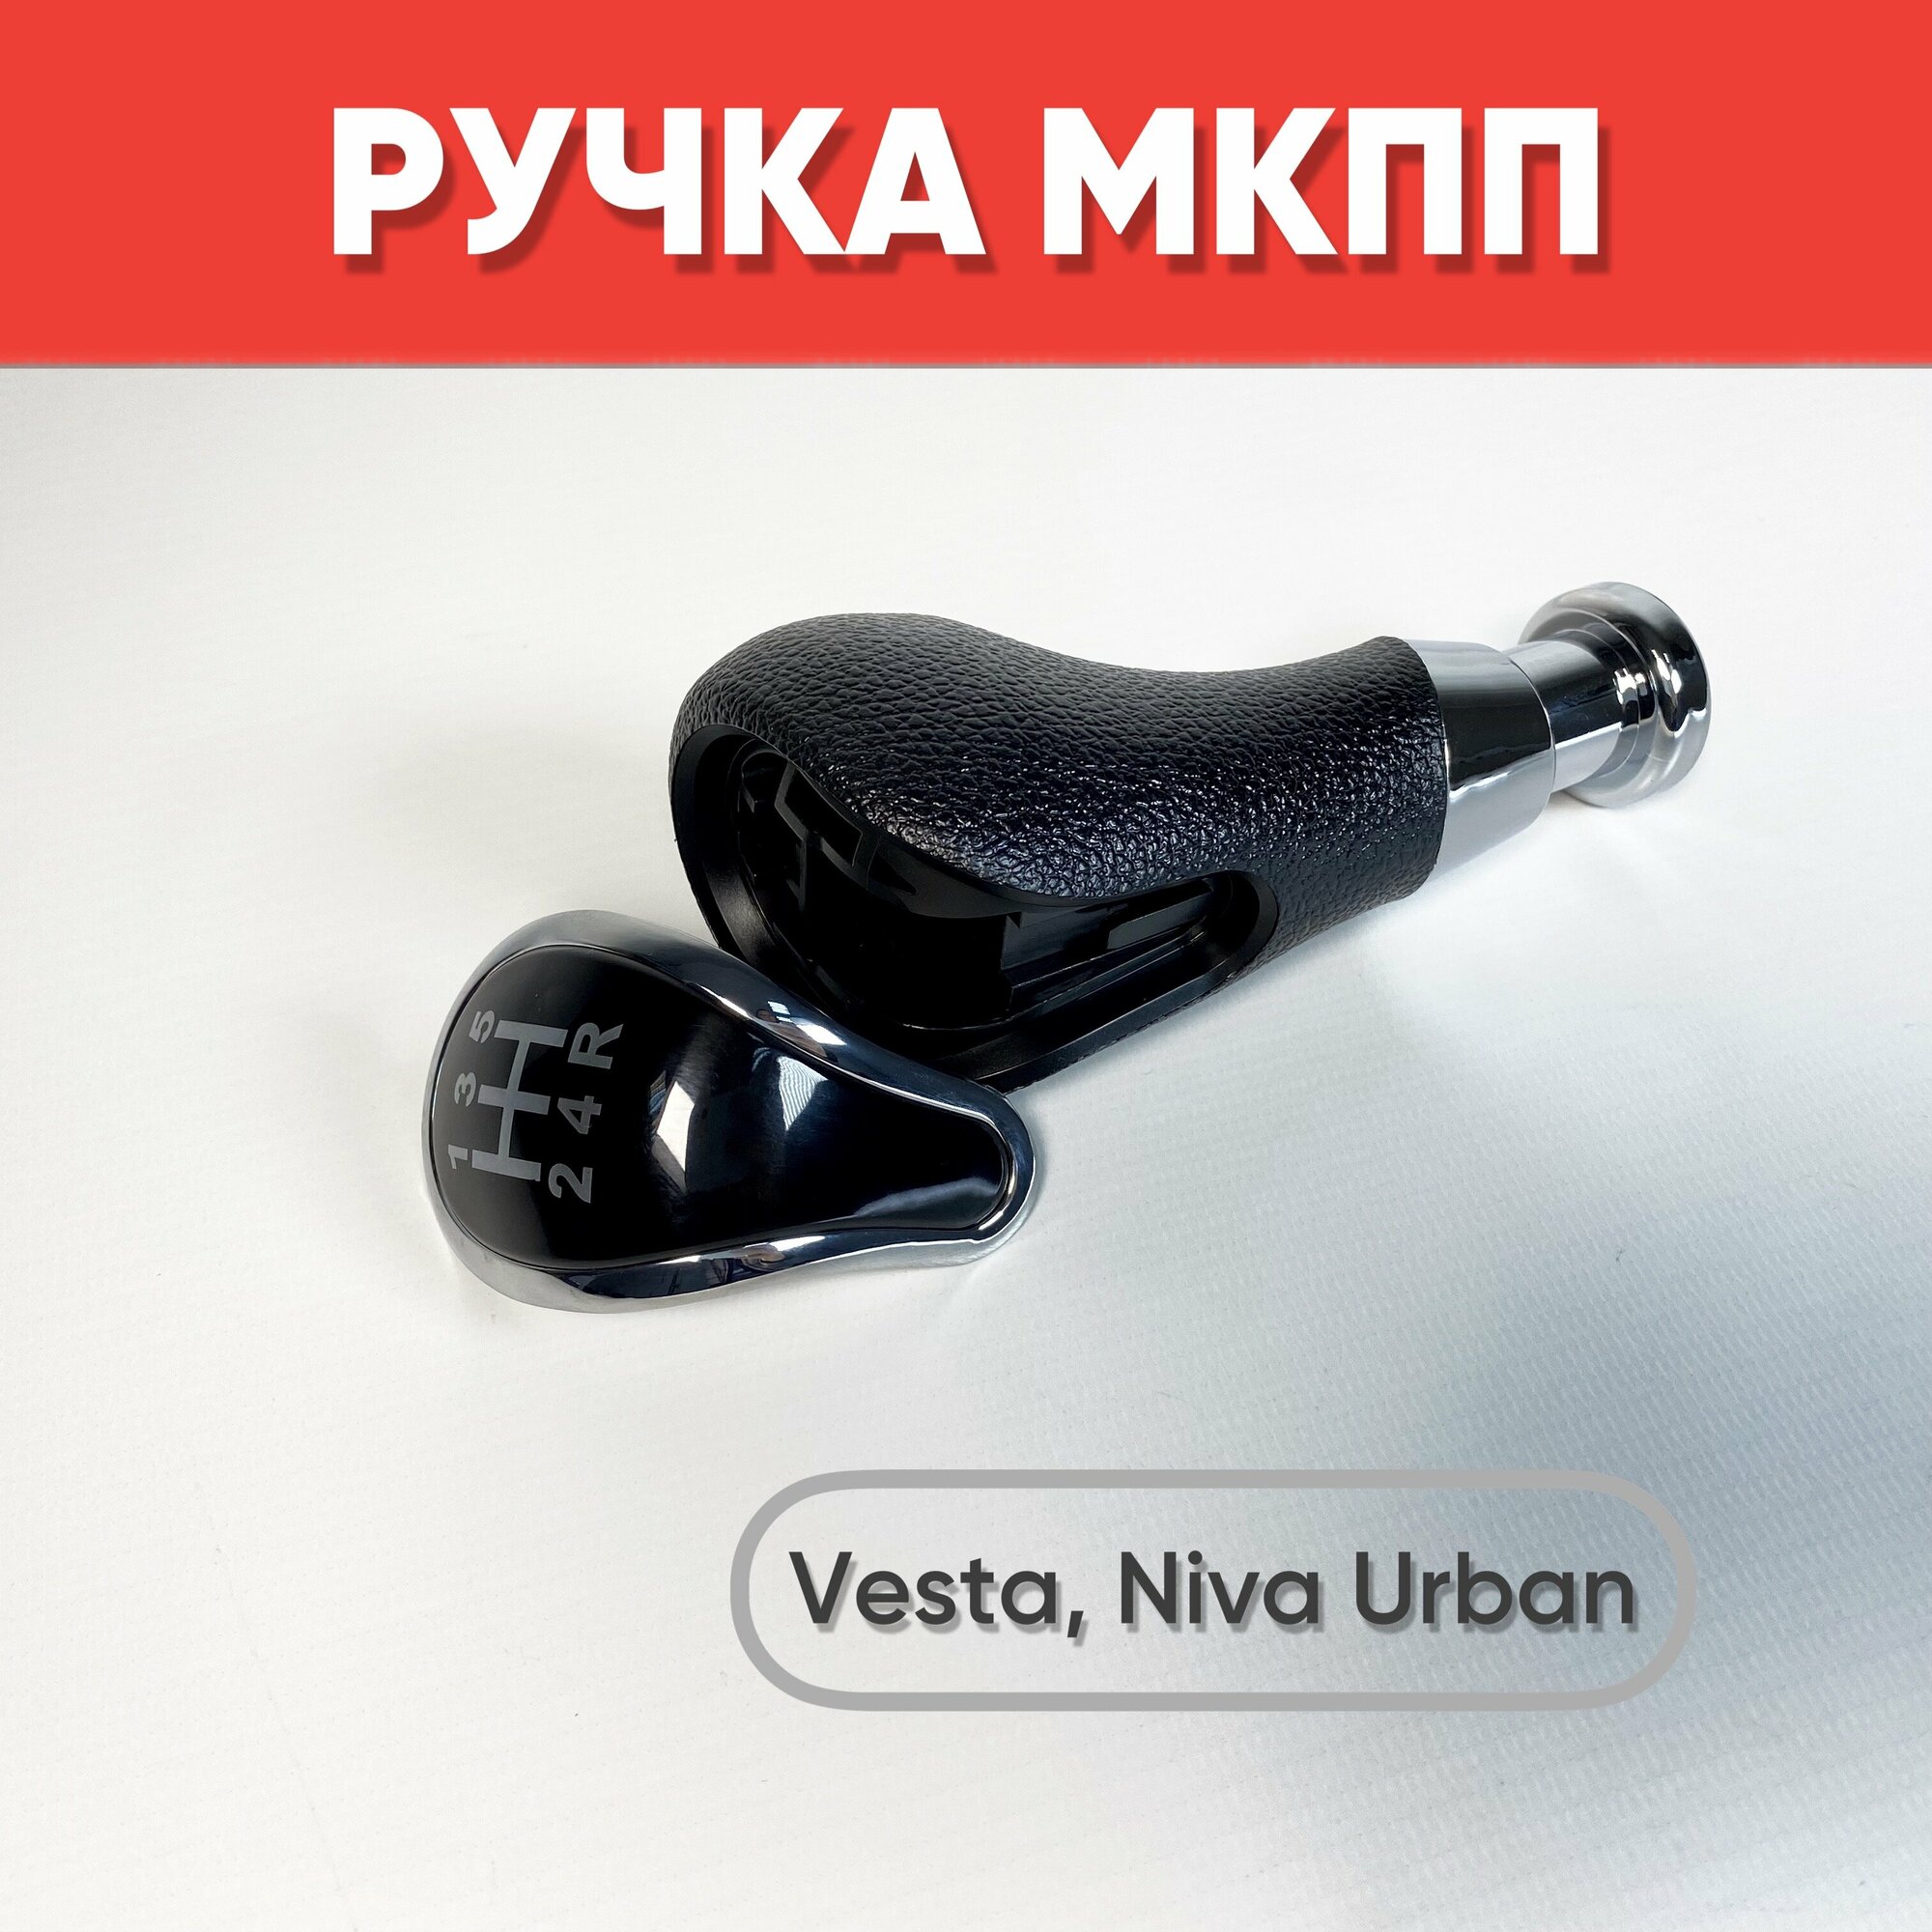 Ручка МКПП для Lada Vesta Niva Urban черный / хром / Рычаг МКПП Веста Нива Урбан со схемой переключения